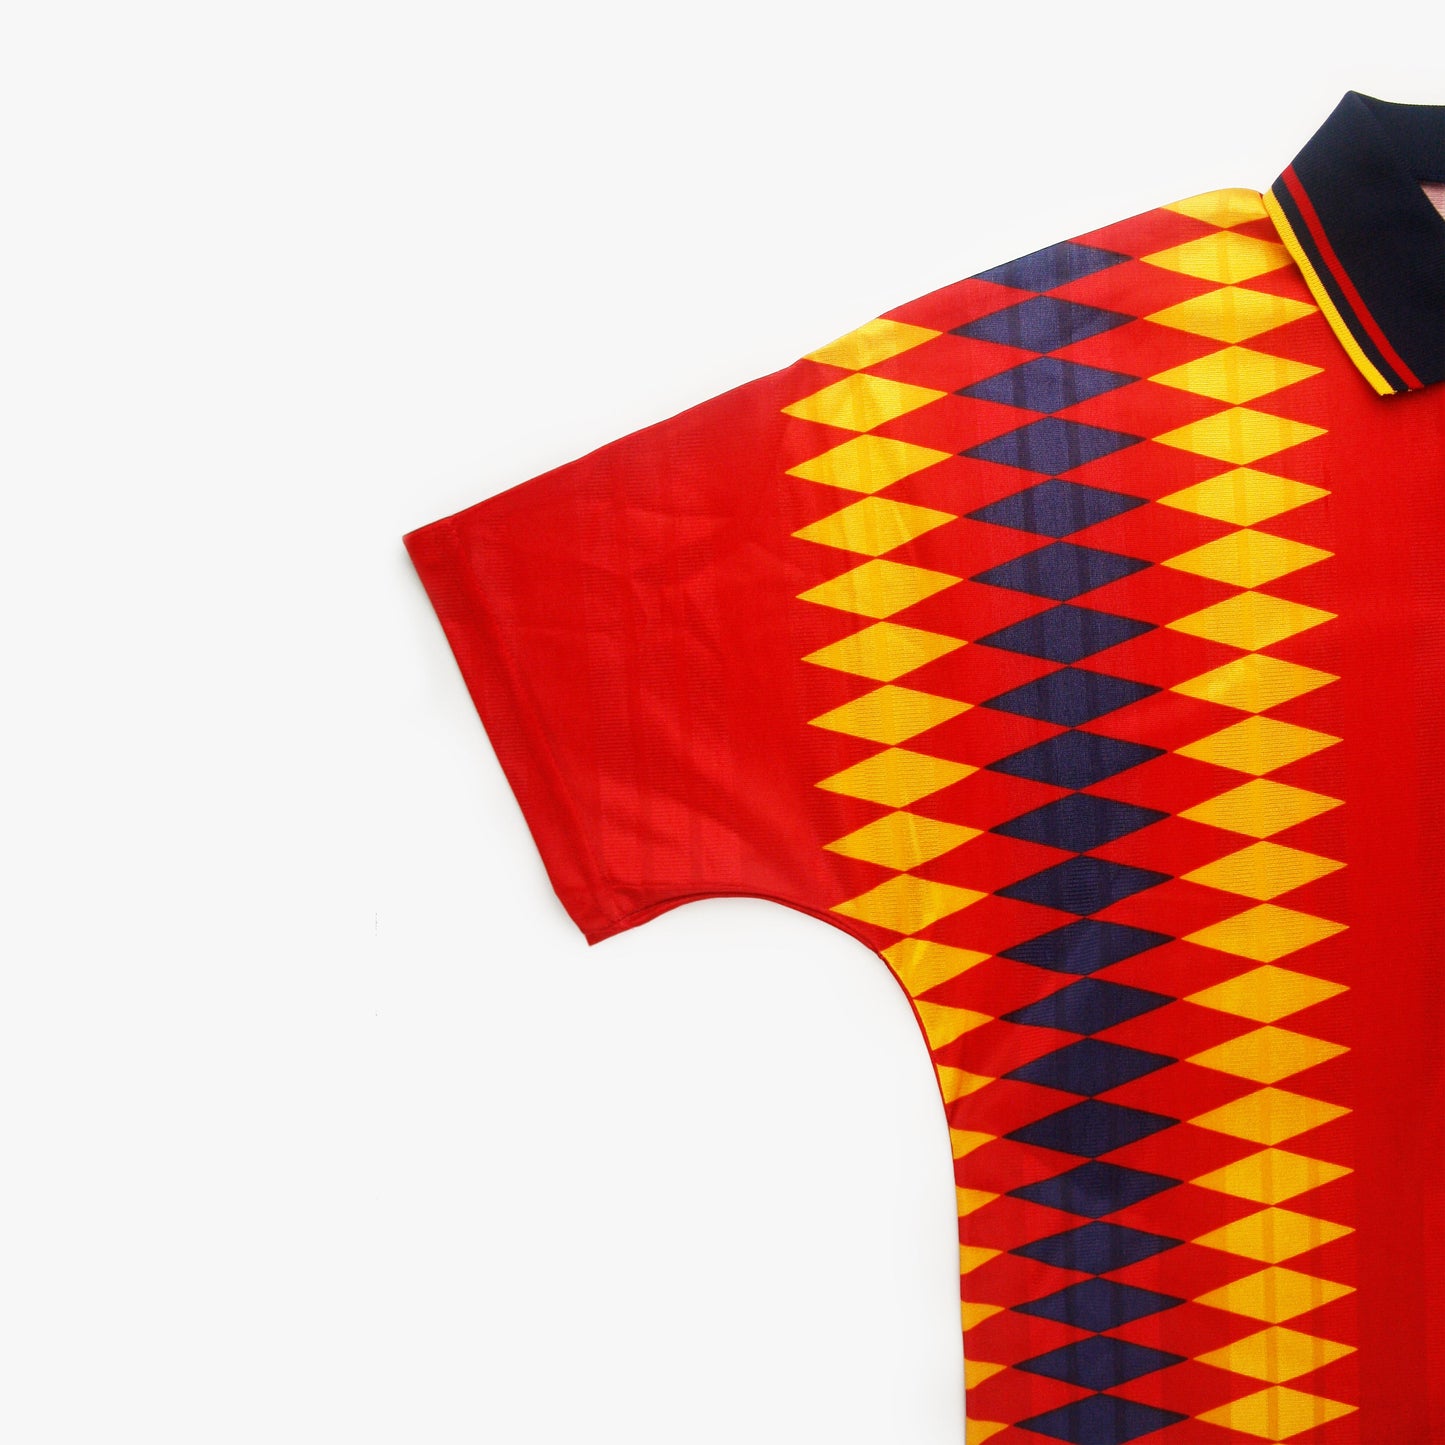 España 94/96 • Camiseta Local • XL